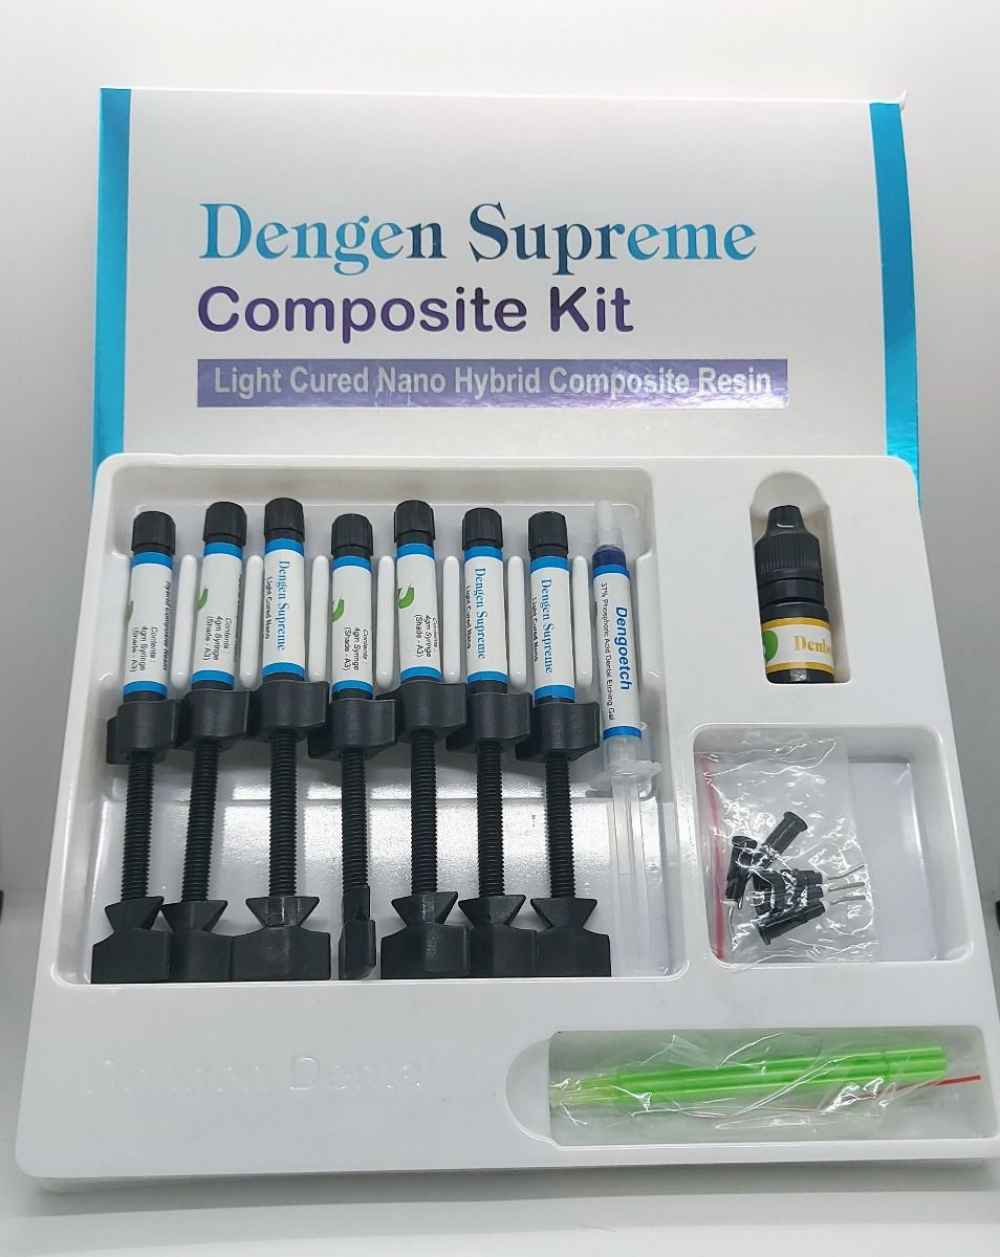 Dengen Supreme Composite Kit 7 Syringe